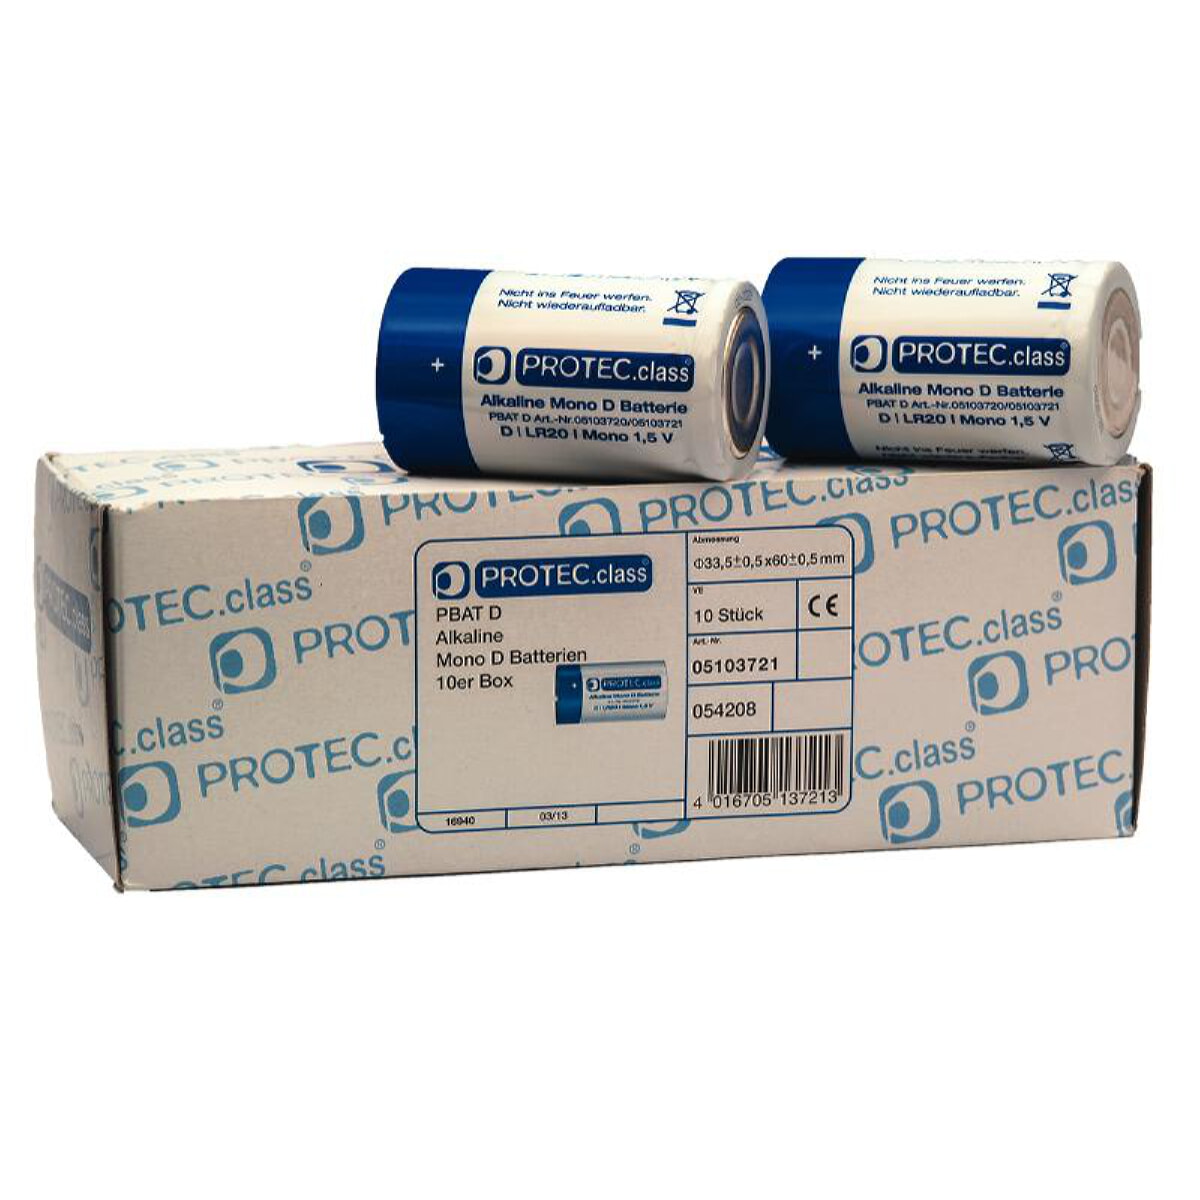 PROTEC.class Batterie PBAT D Mono 10Box